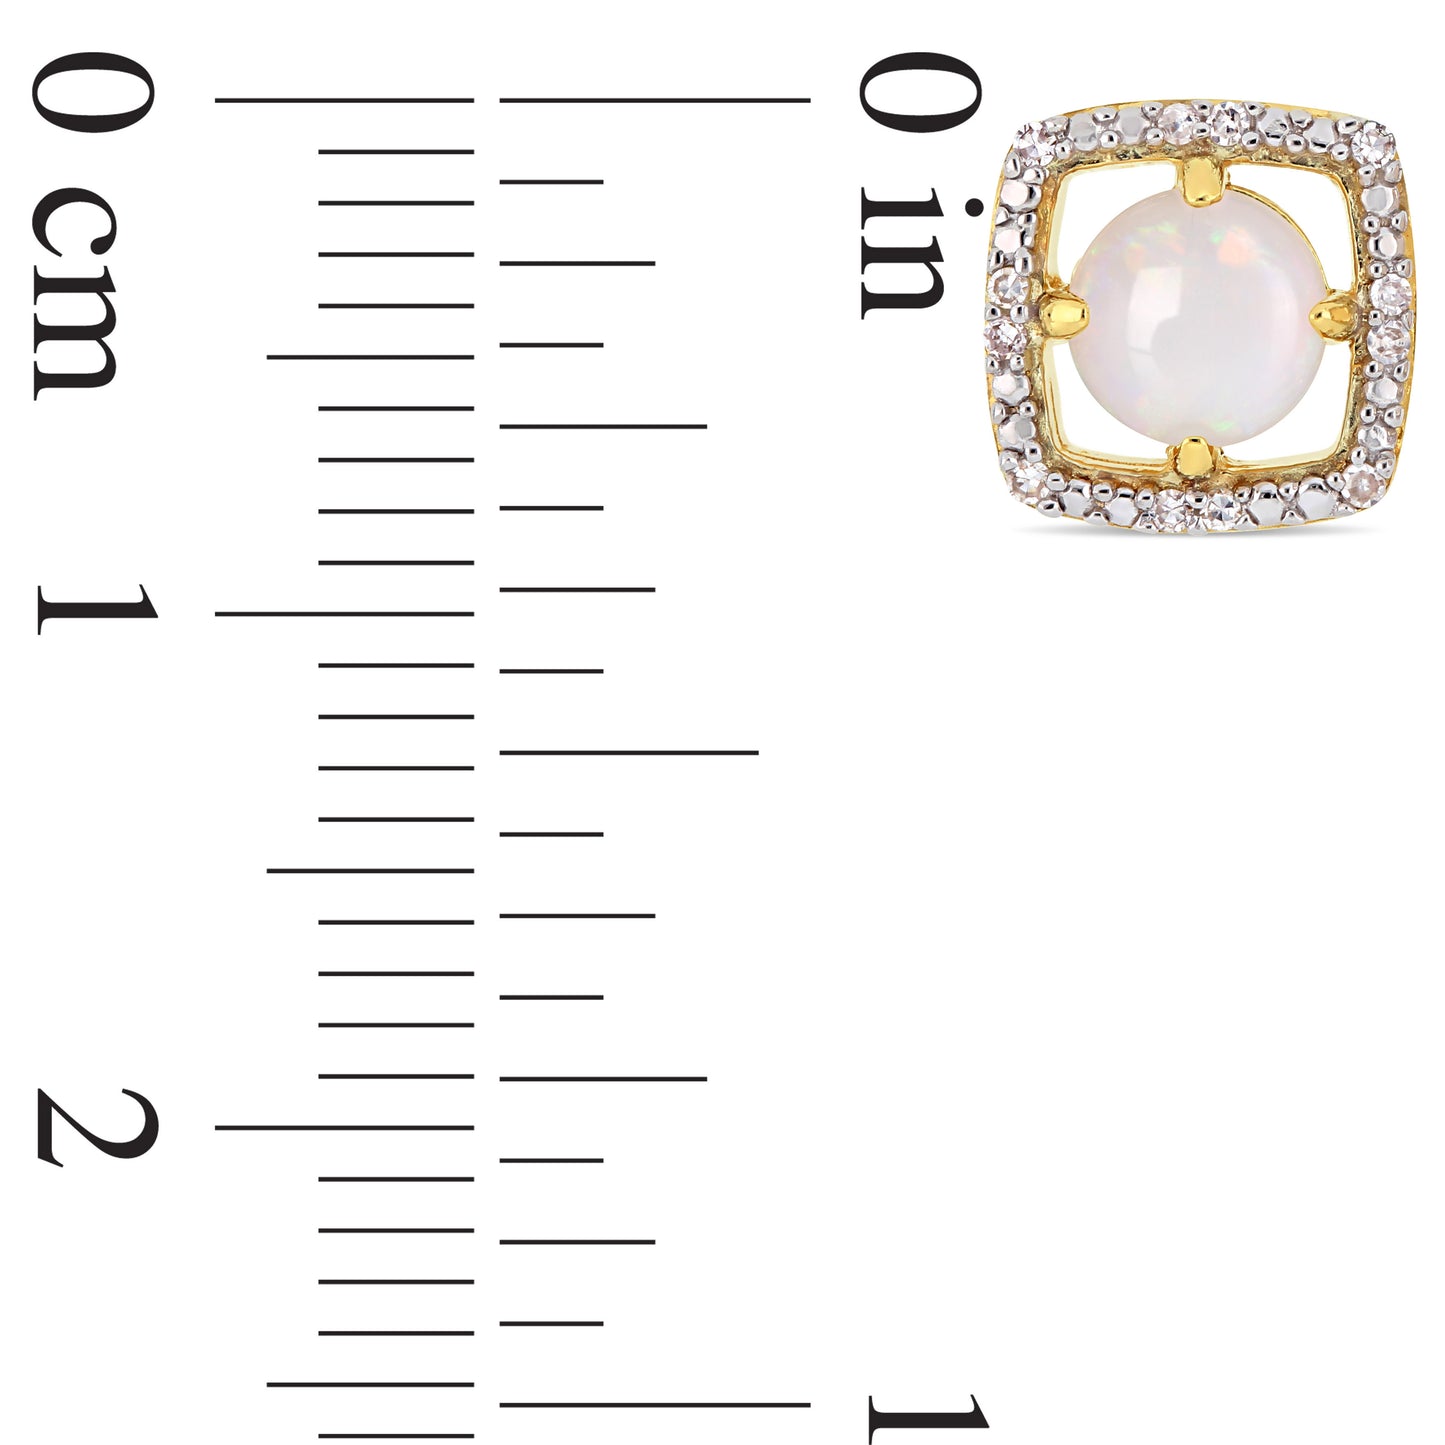 Opal & Diamond Earrings in 10k Yellow Gold